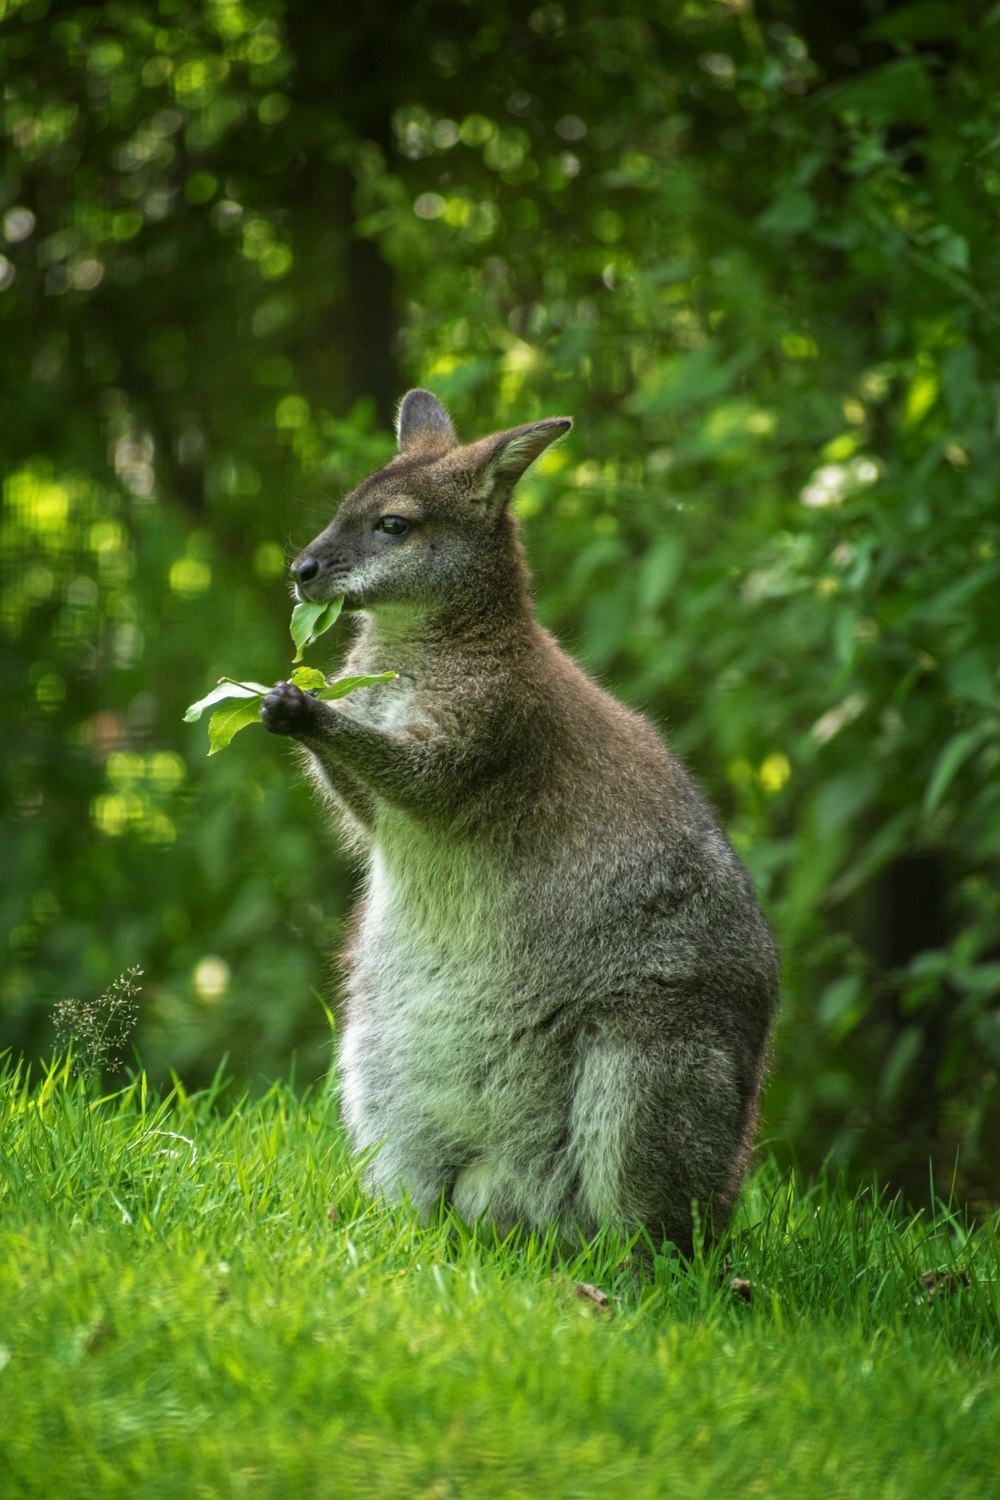 gray kangaroo on green grass during daytime